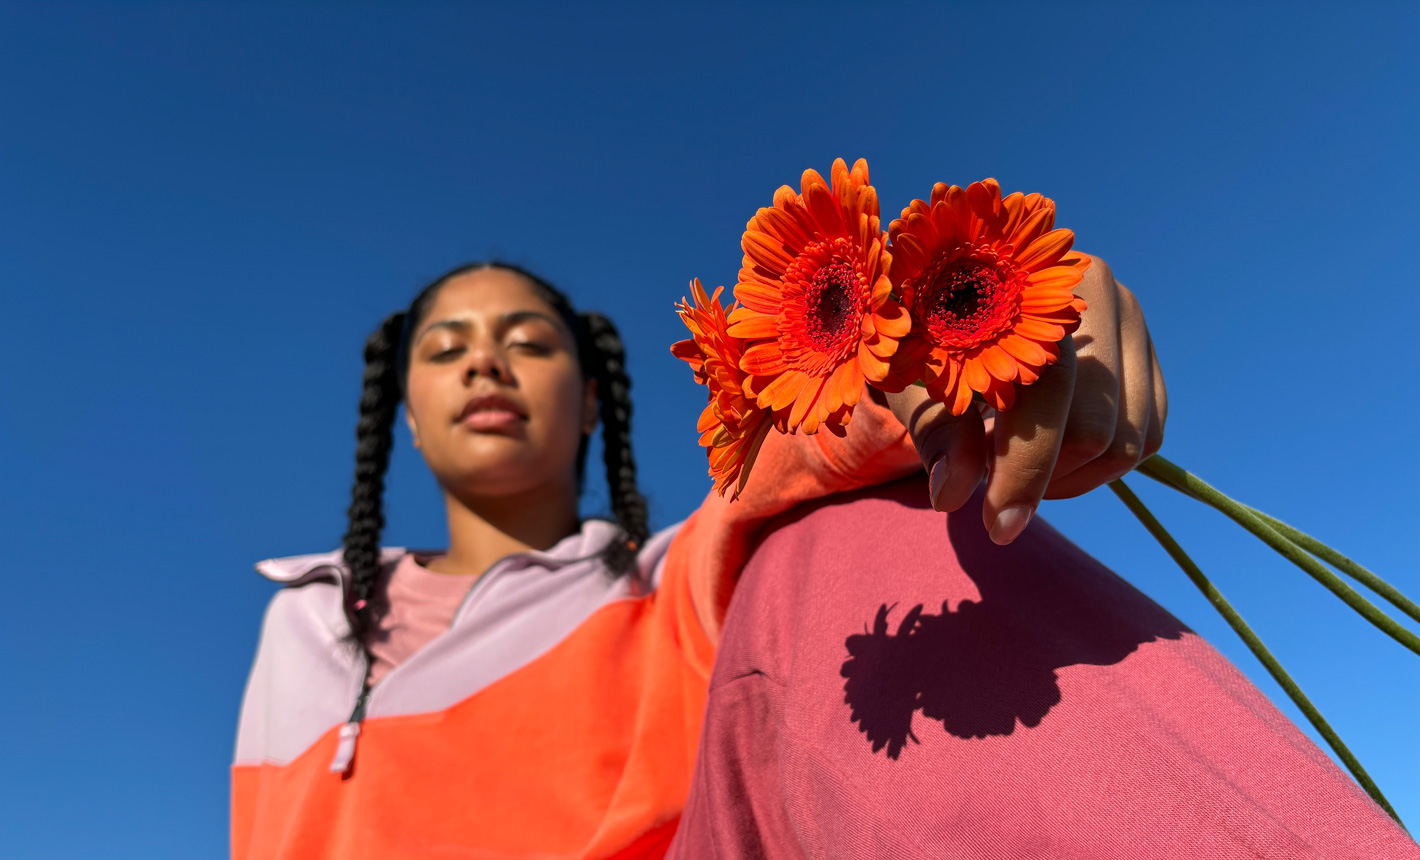 꽃을 들고 있는 여성의 인물 사진